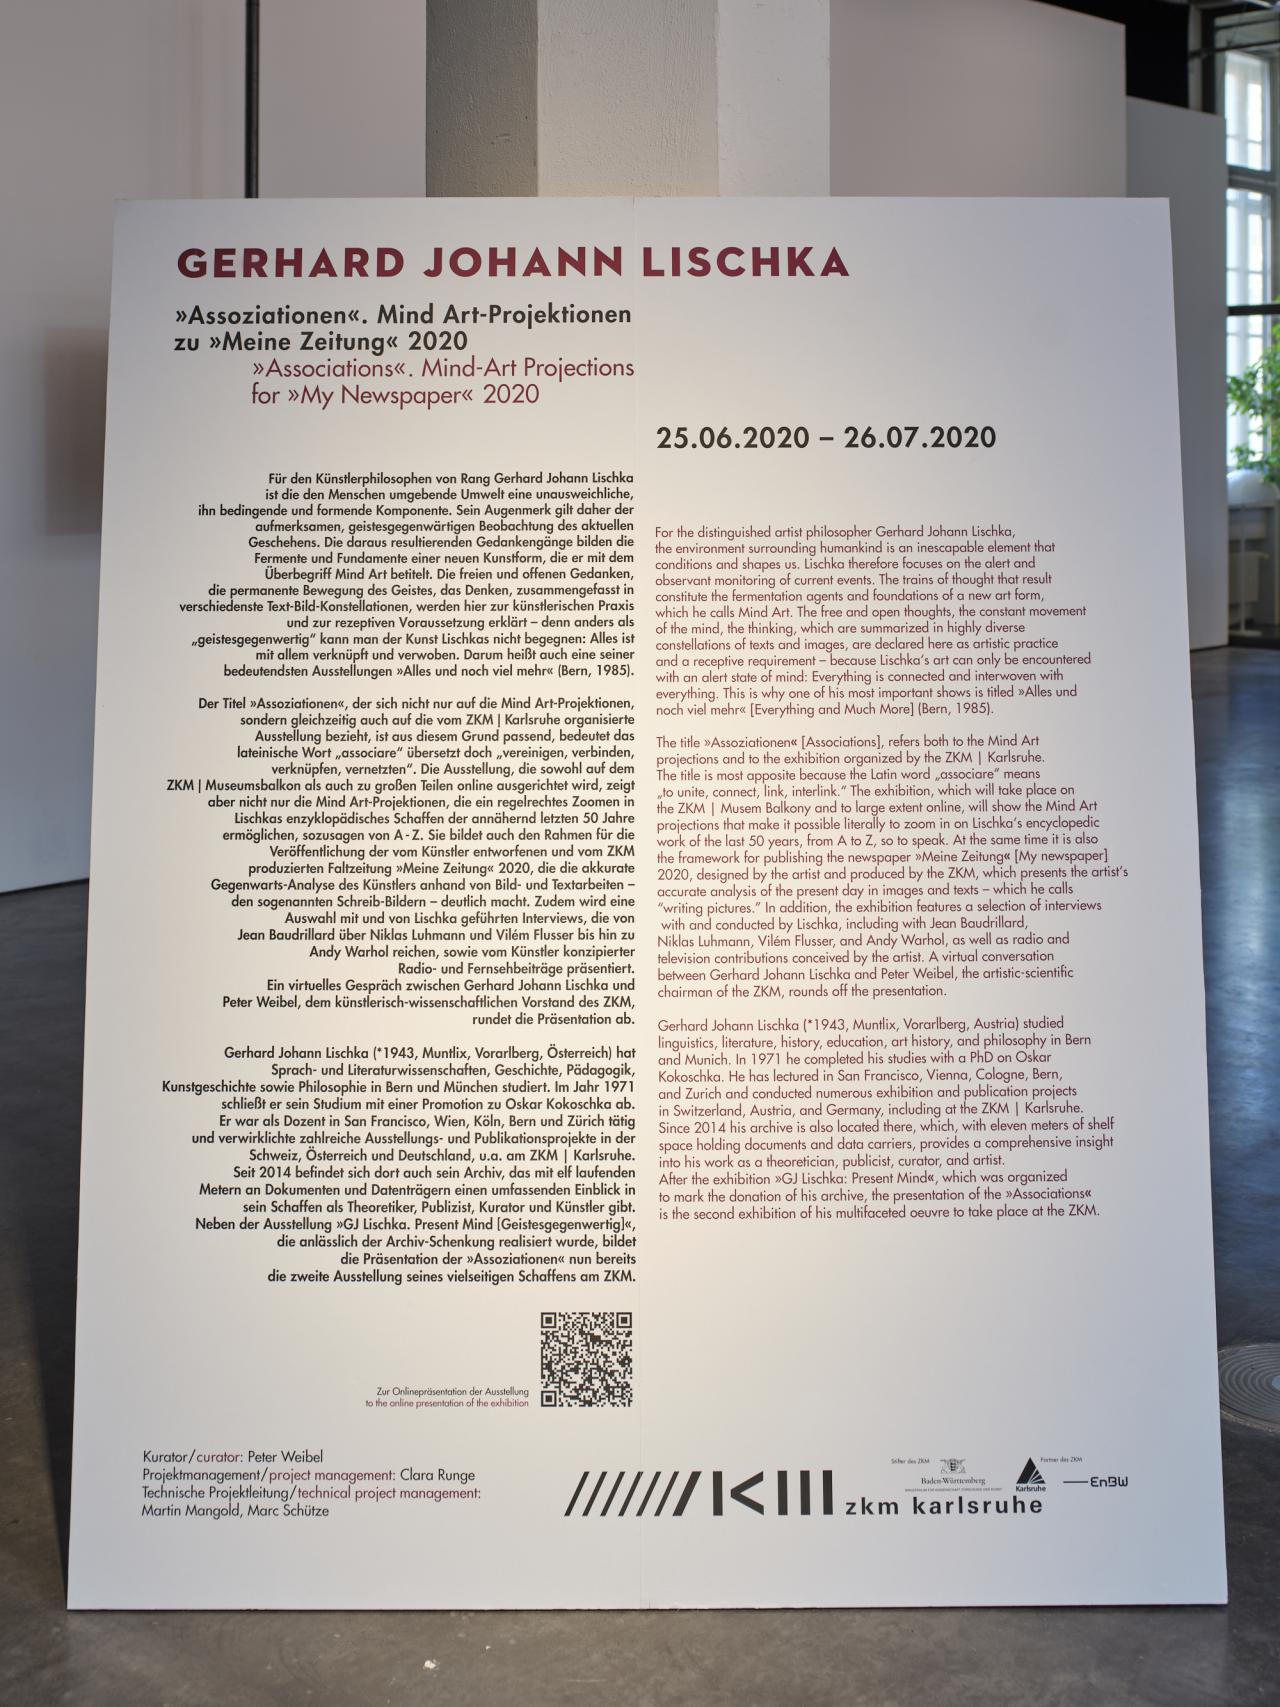 Zu sehen ist eine große Platte mit dem Ausstellungstext zu Gerhard Johann Lischka. 